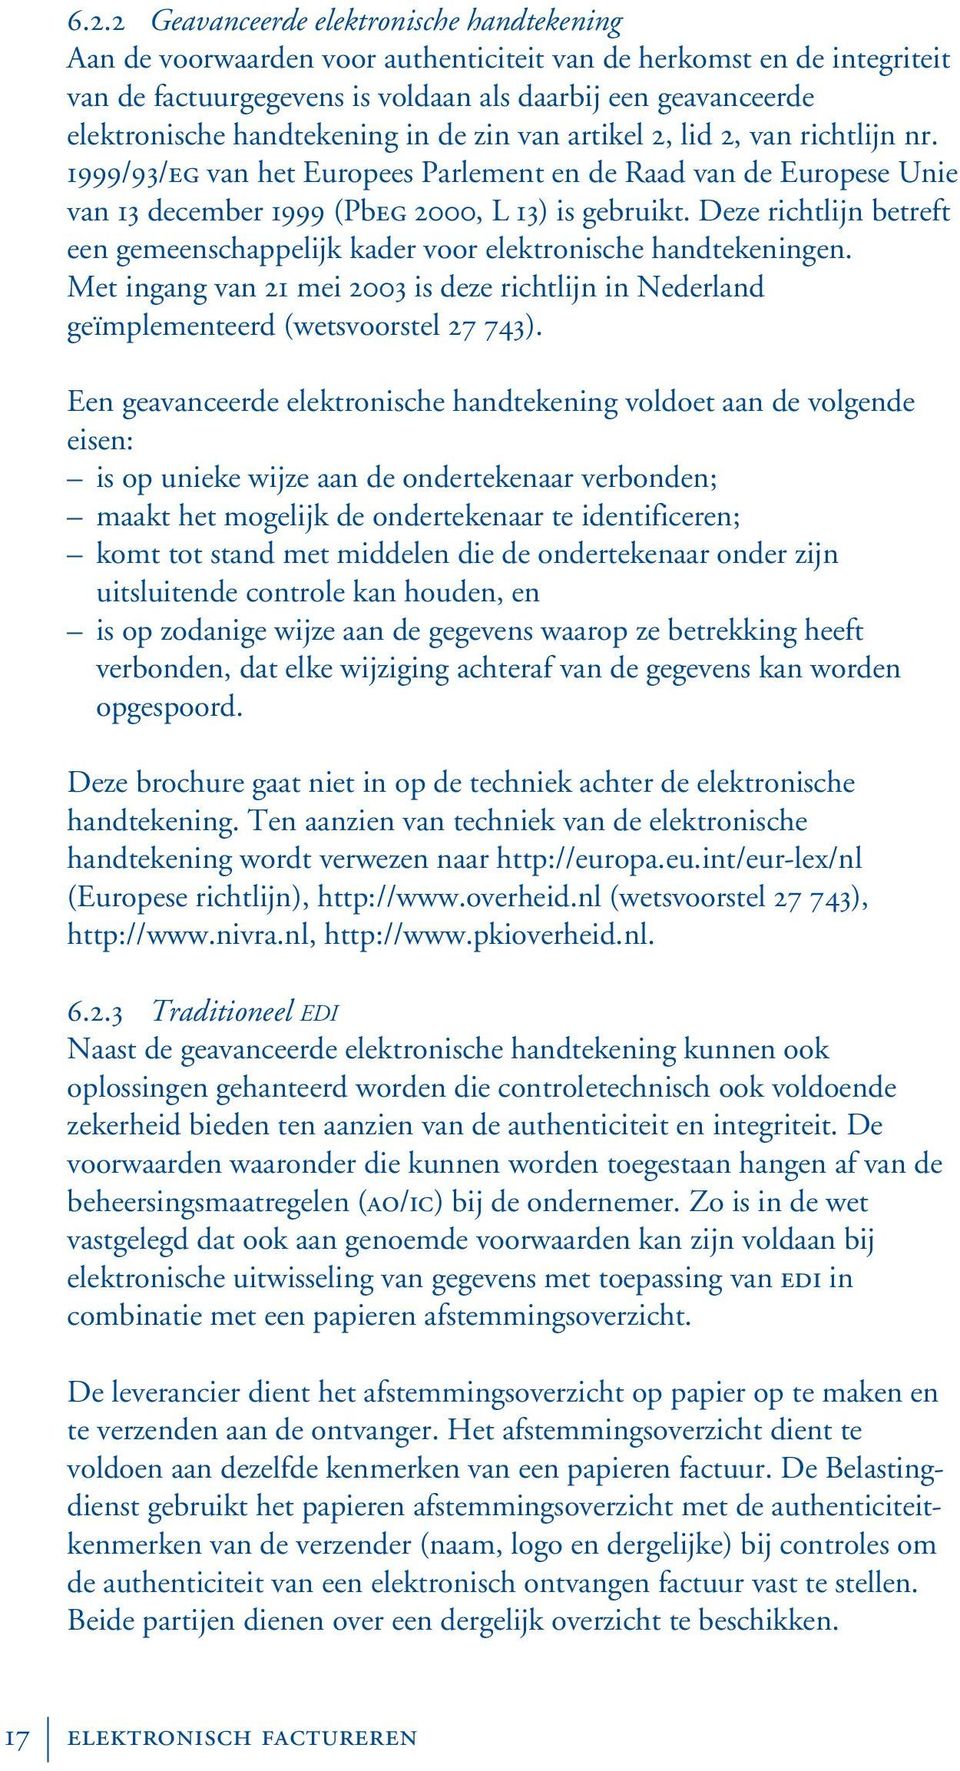 Deze richtlijn betreft een gemeenschappelijk kader voor elektronische handtekeningen. Met ingang van 21 mei 2003 is deze richtlijn in Nederland geïmplementeerd (wetsvoorstel 27 743).